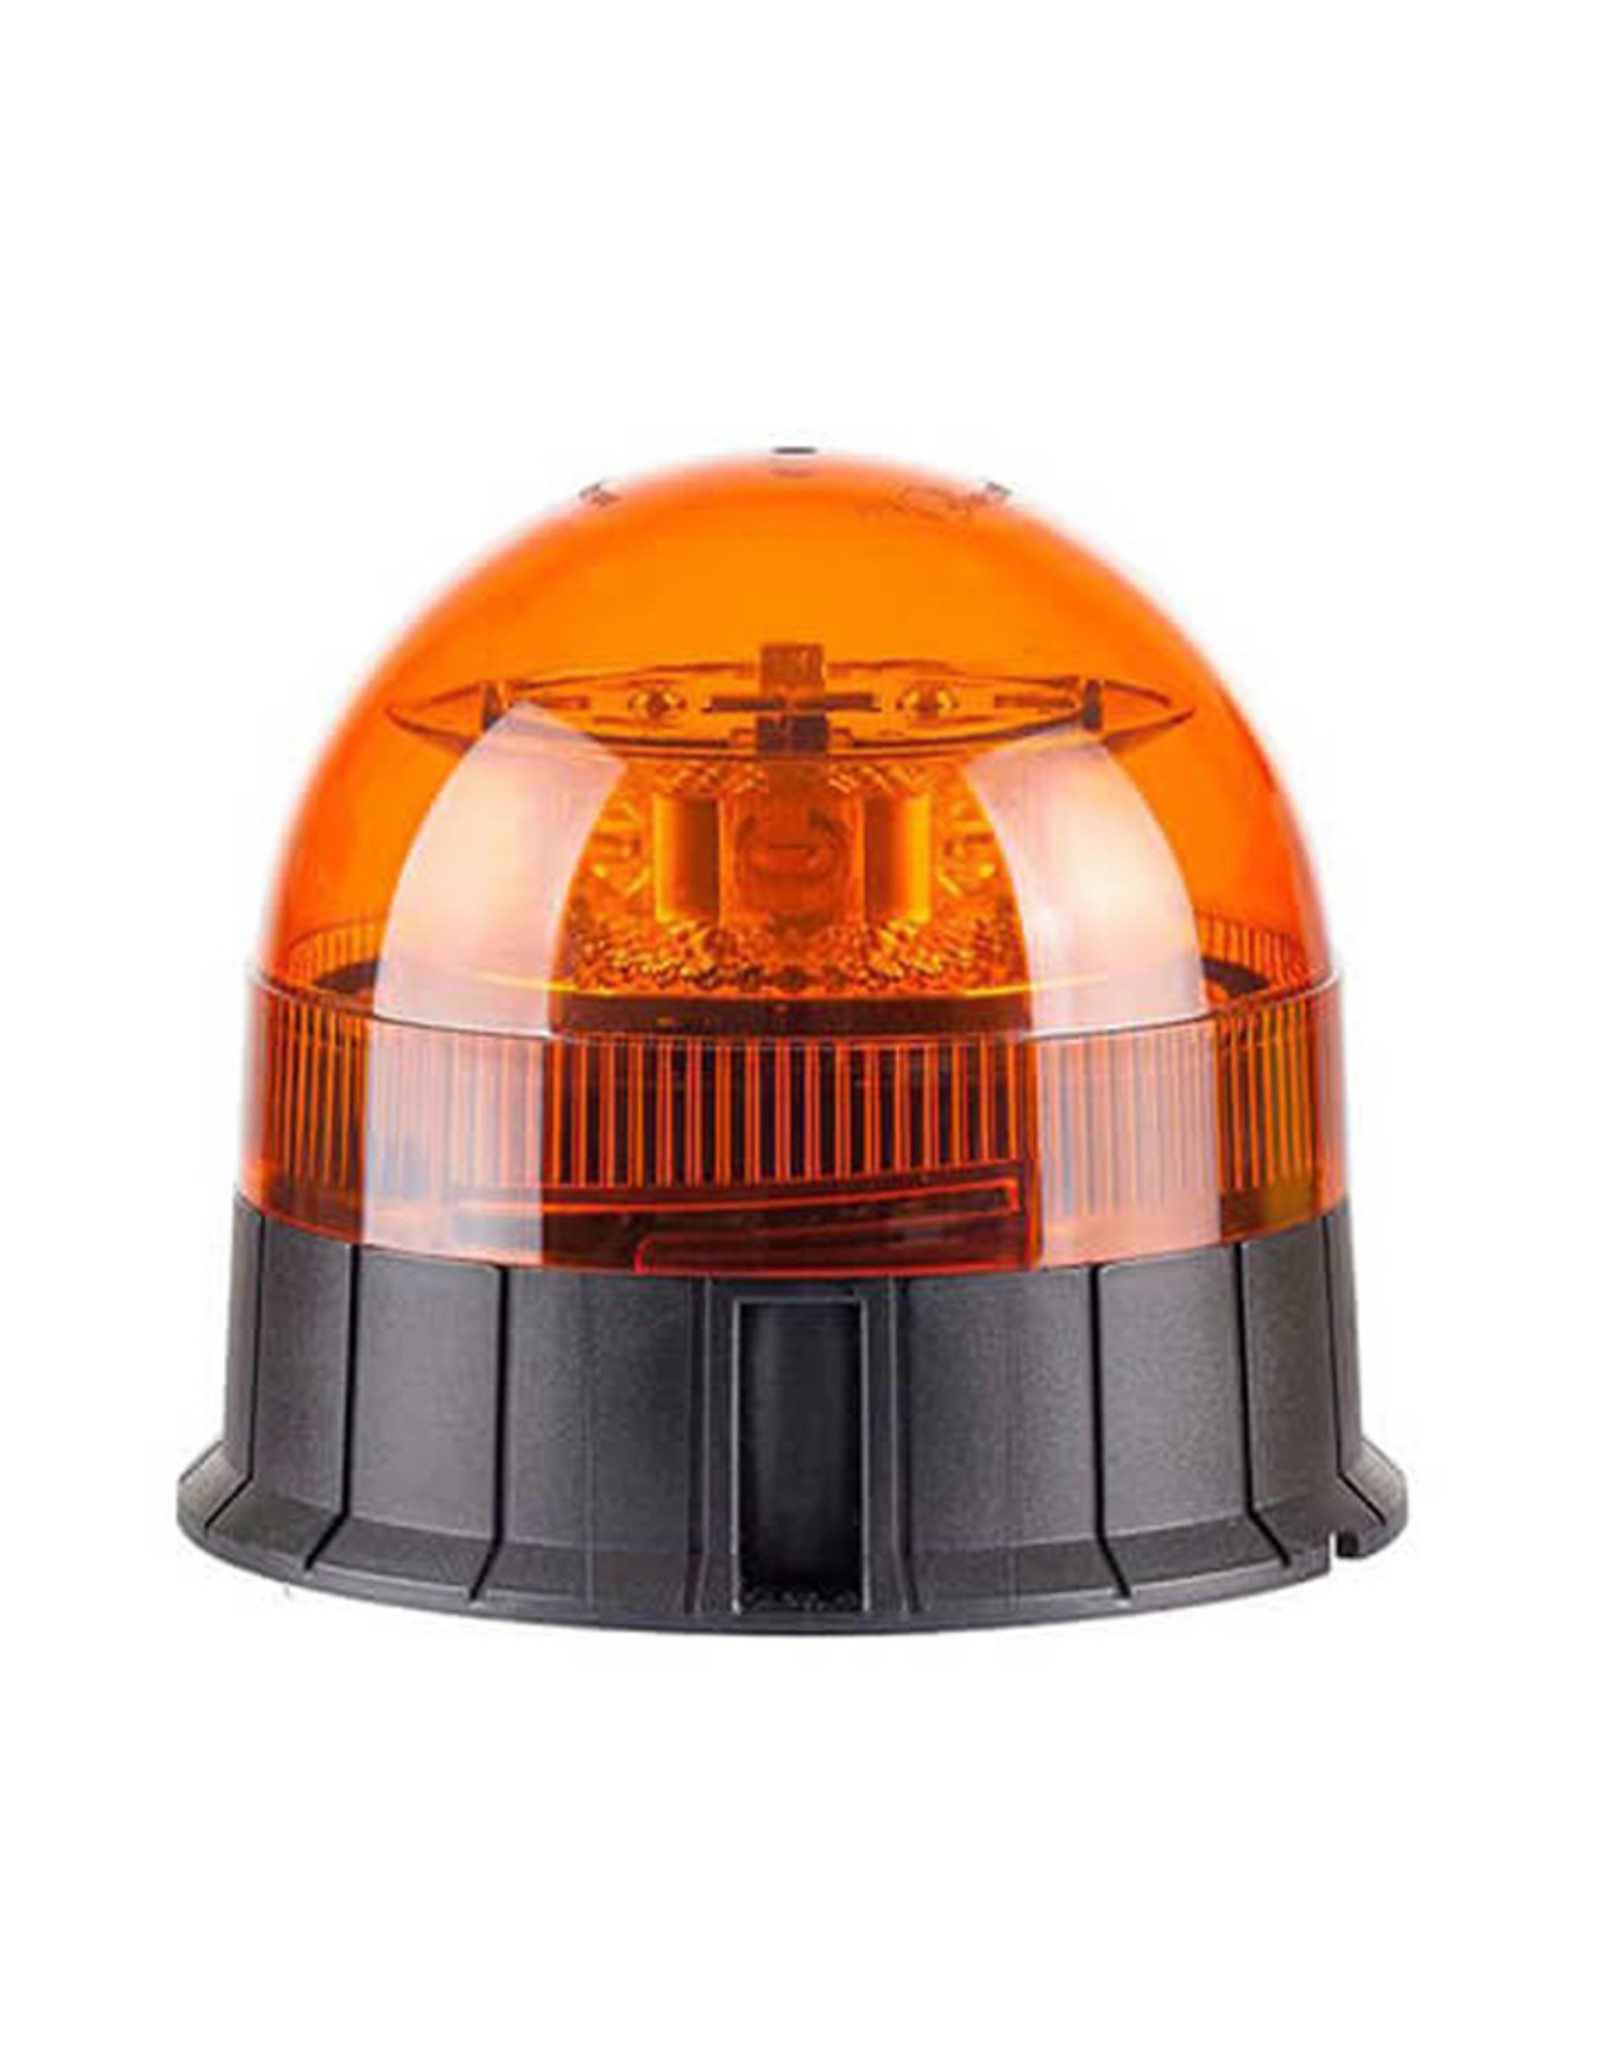 Rundumkennleuchte Rundumleuchte orange mit Magnetfuß u Saugnapf 12V 5